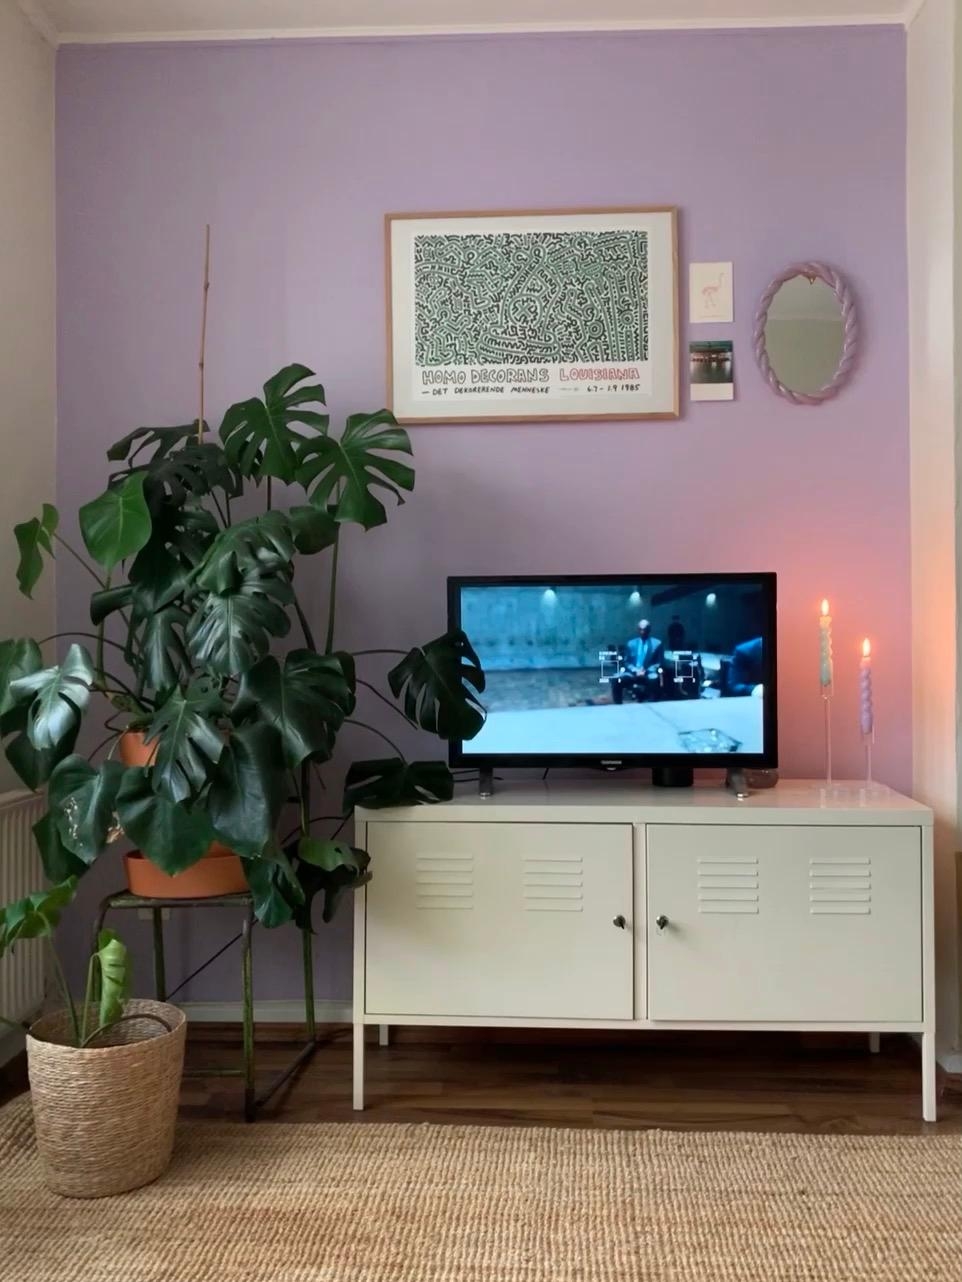 Liebe meine neue Fliederwand 🤍
#livingroom #tv #lilac #flieder #monstera 